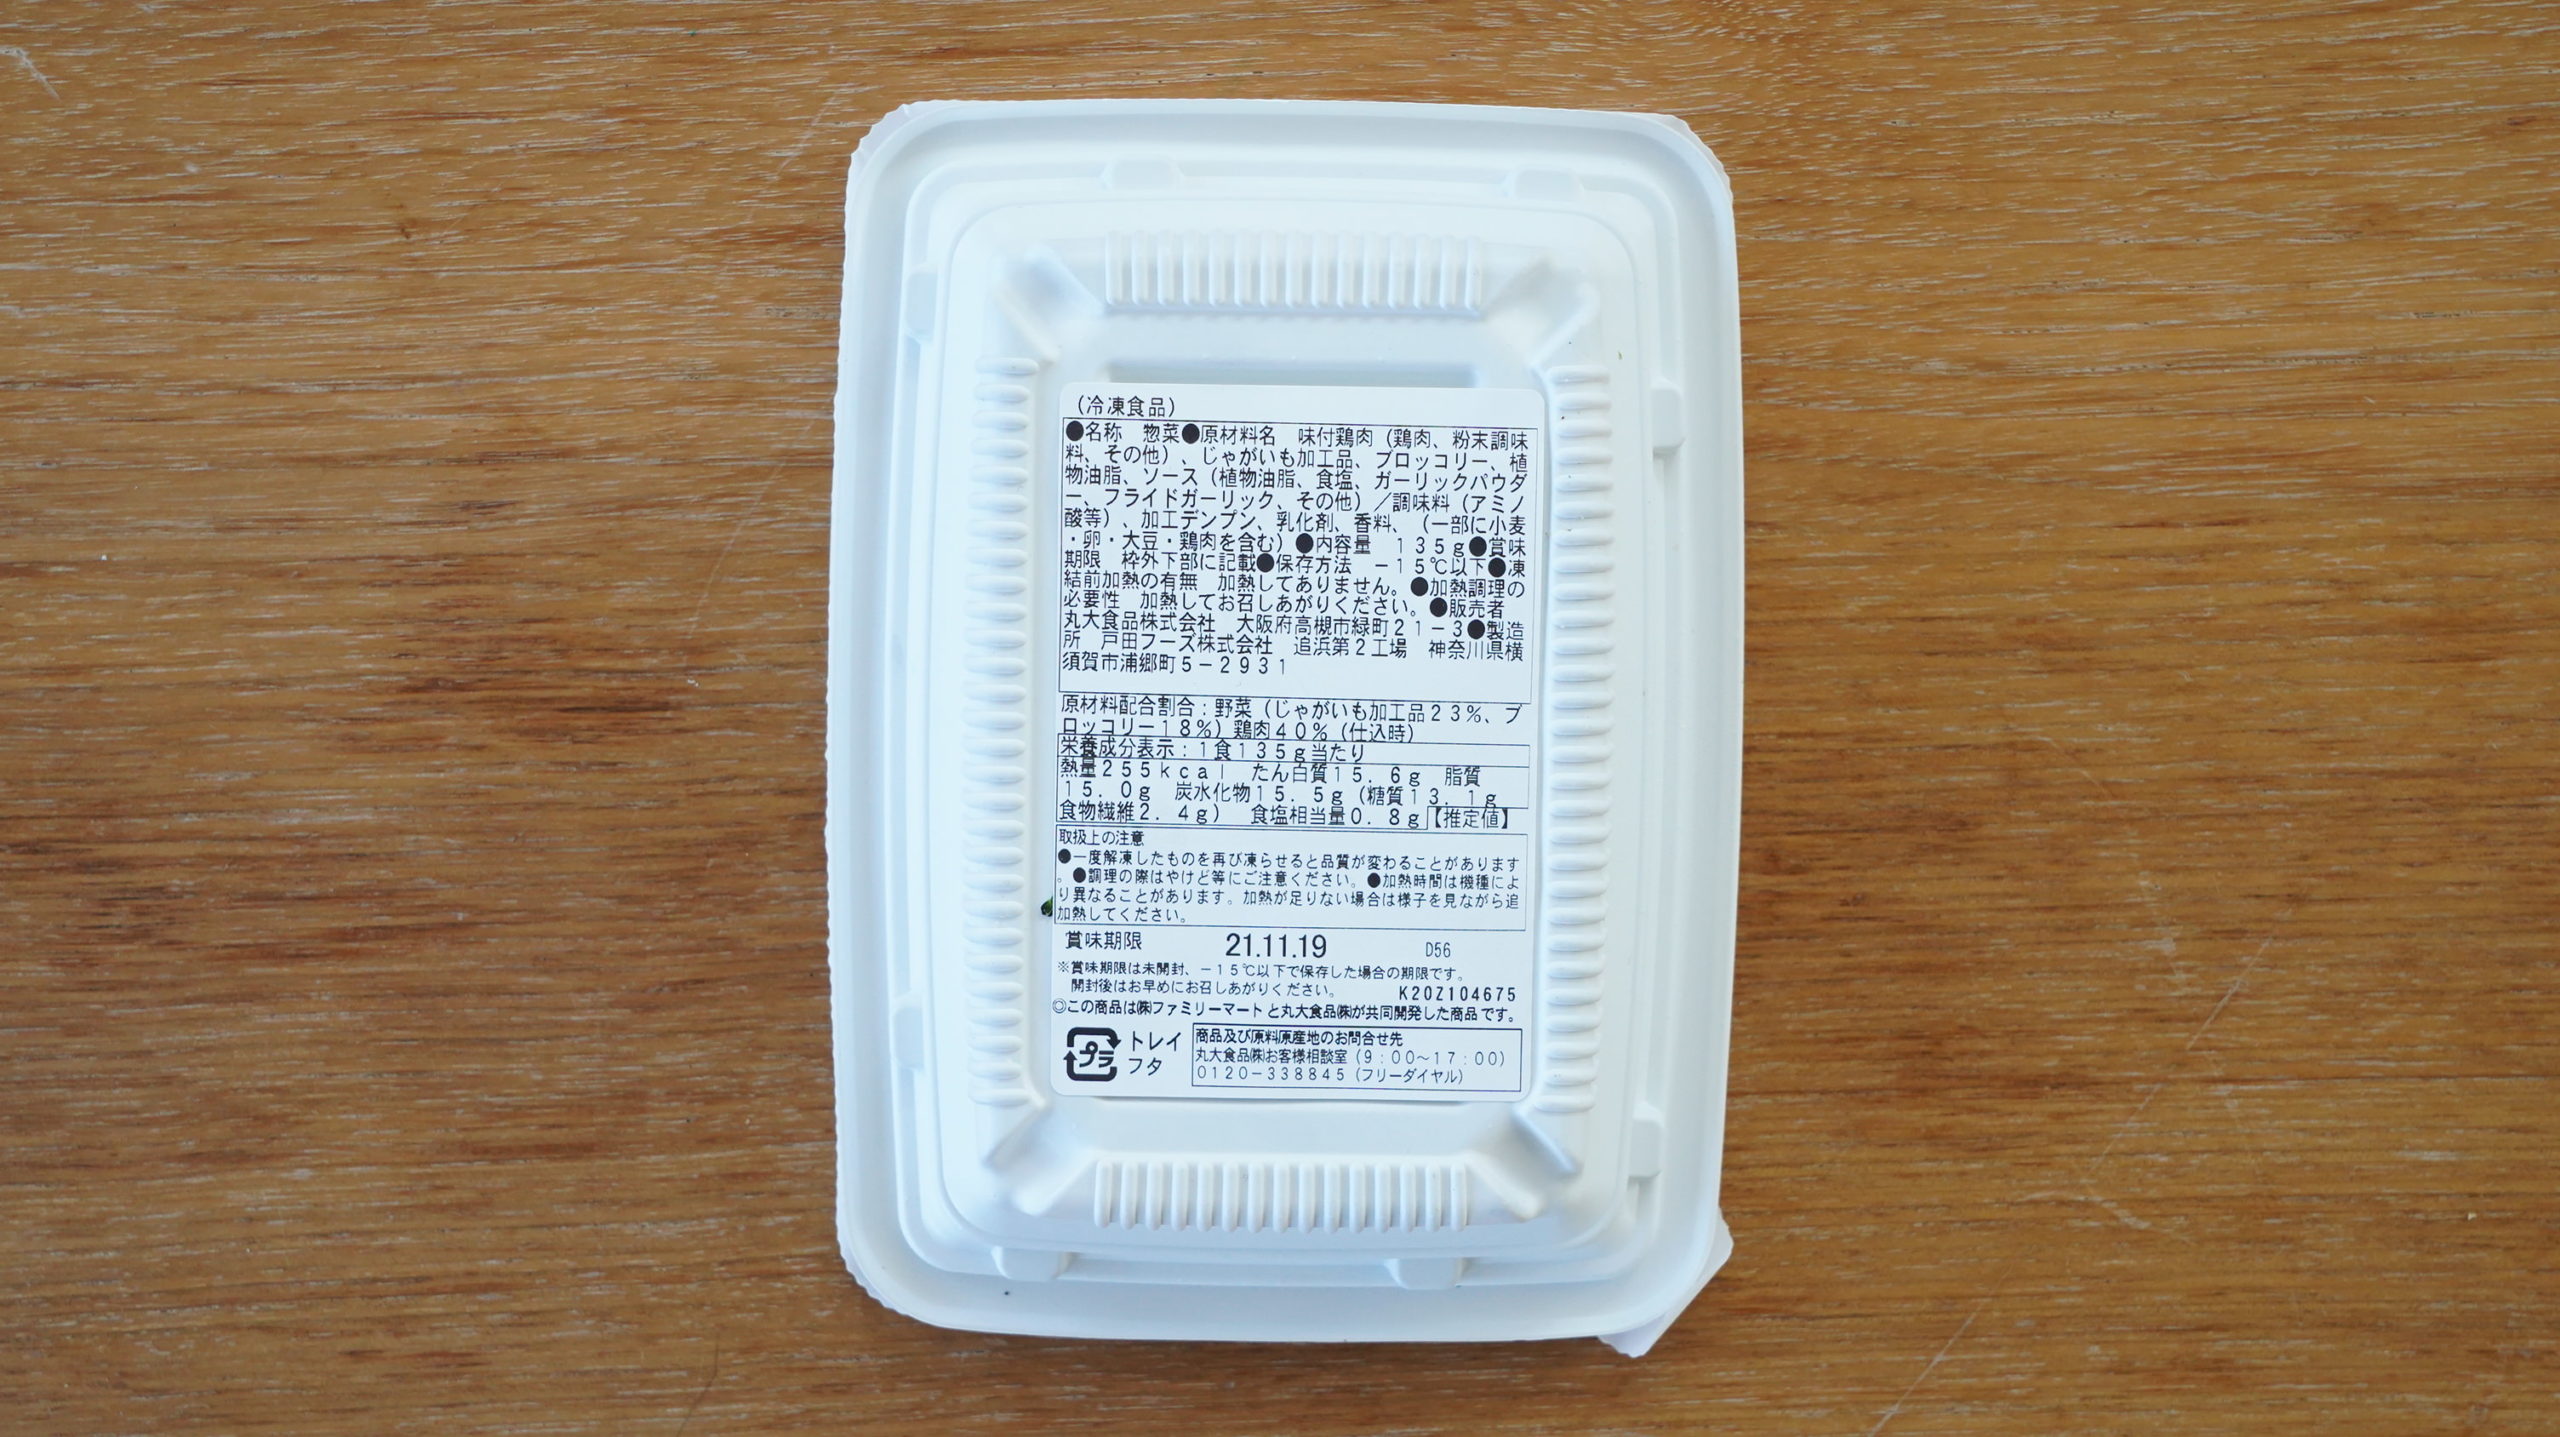 ファミリーマートの冷凍食品「野菜とチキンのアヒージョ風」のパッケージ裏面の写真